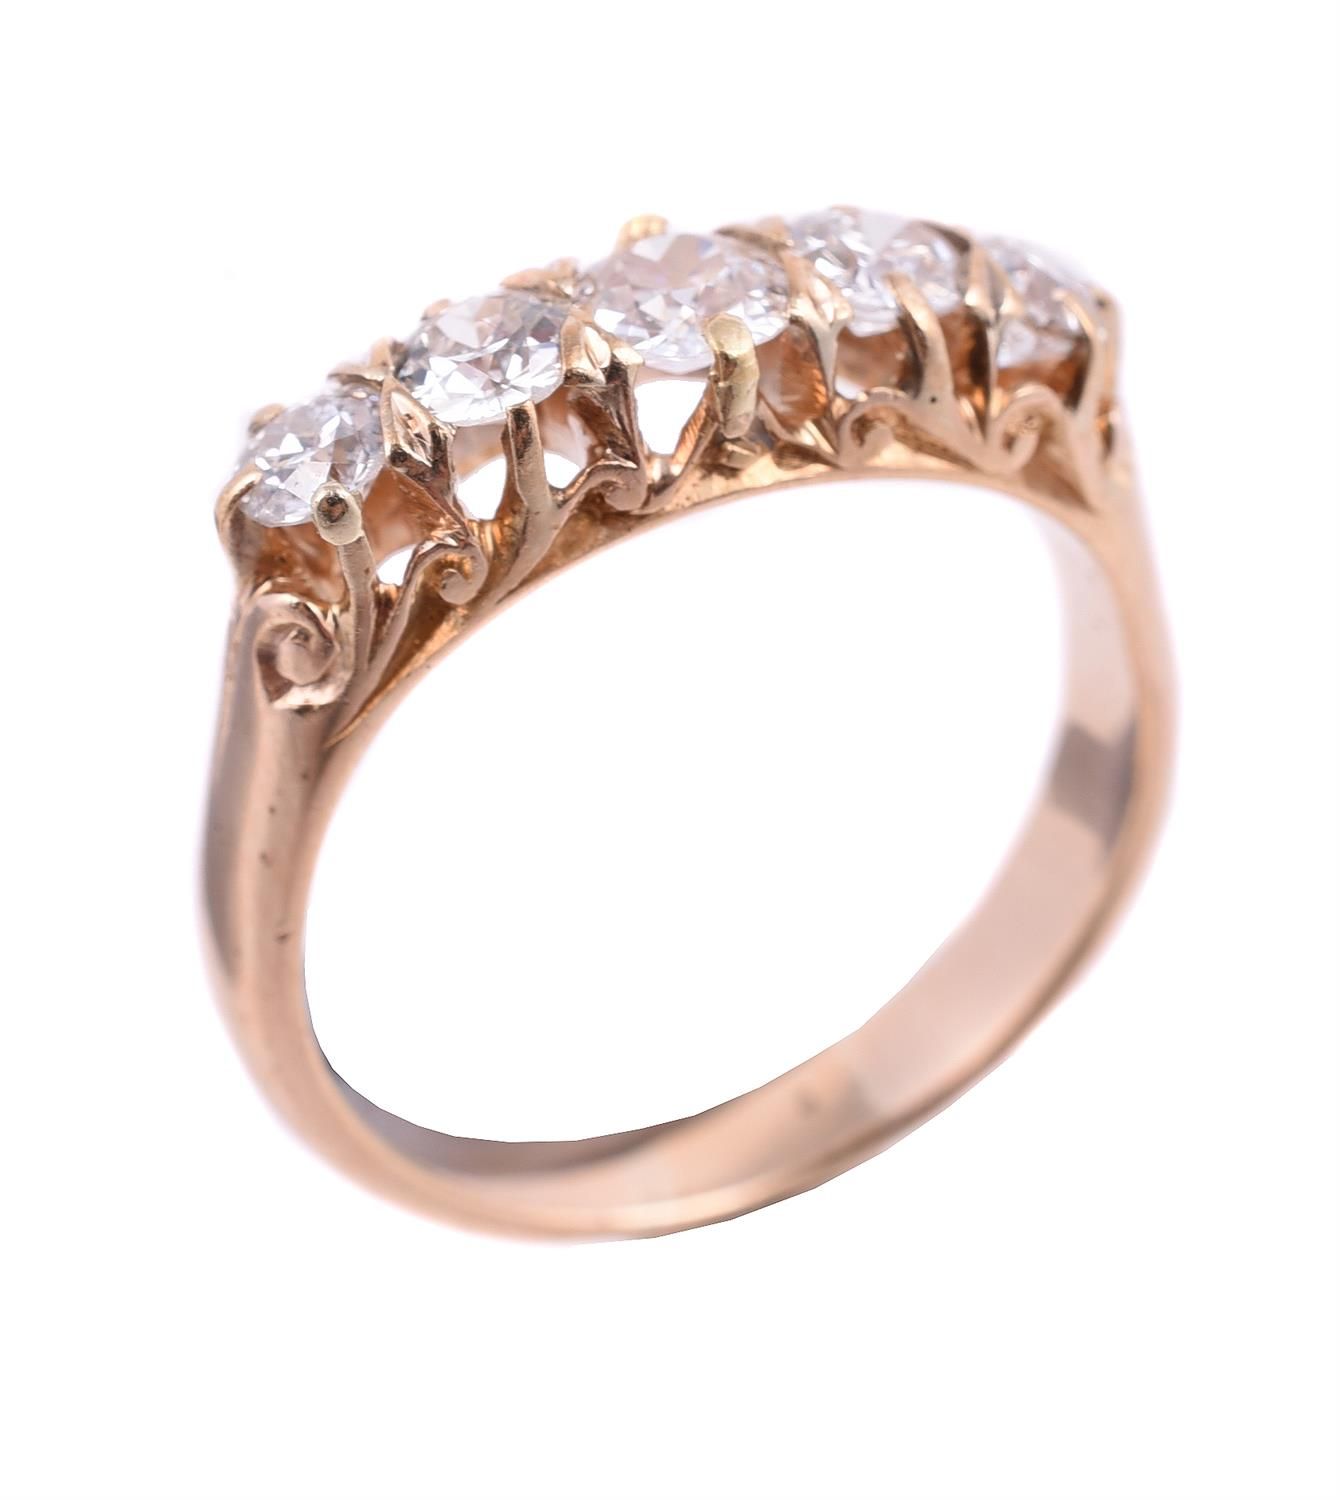 A five stone diamond ring 五颗钻石戒指，五颗老式切割钻石在爪式镶嵌中，共约1.00克拉，手指尺寸为Q 1/2，总重5.1克